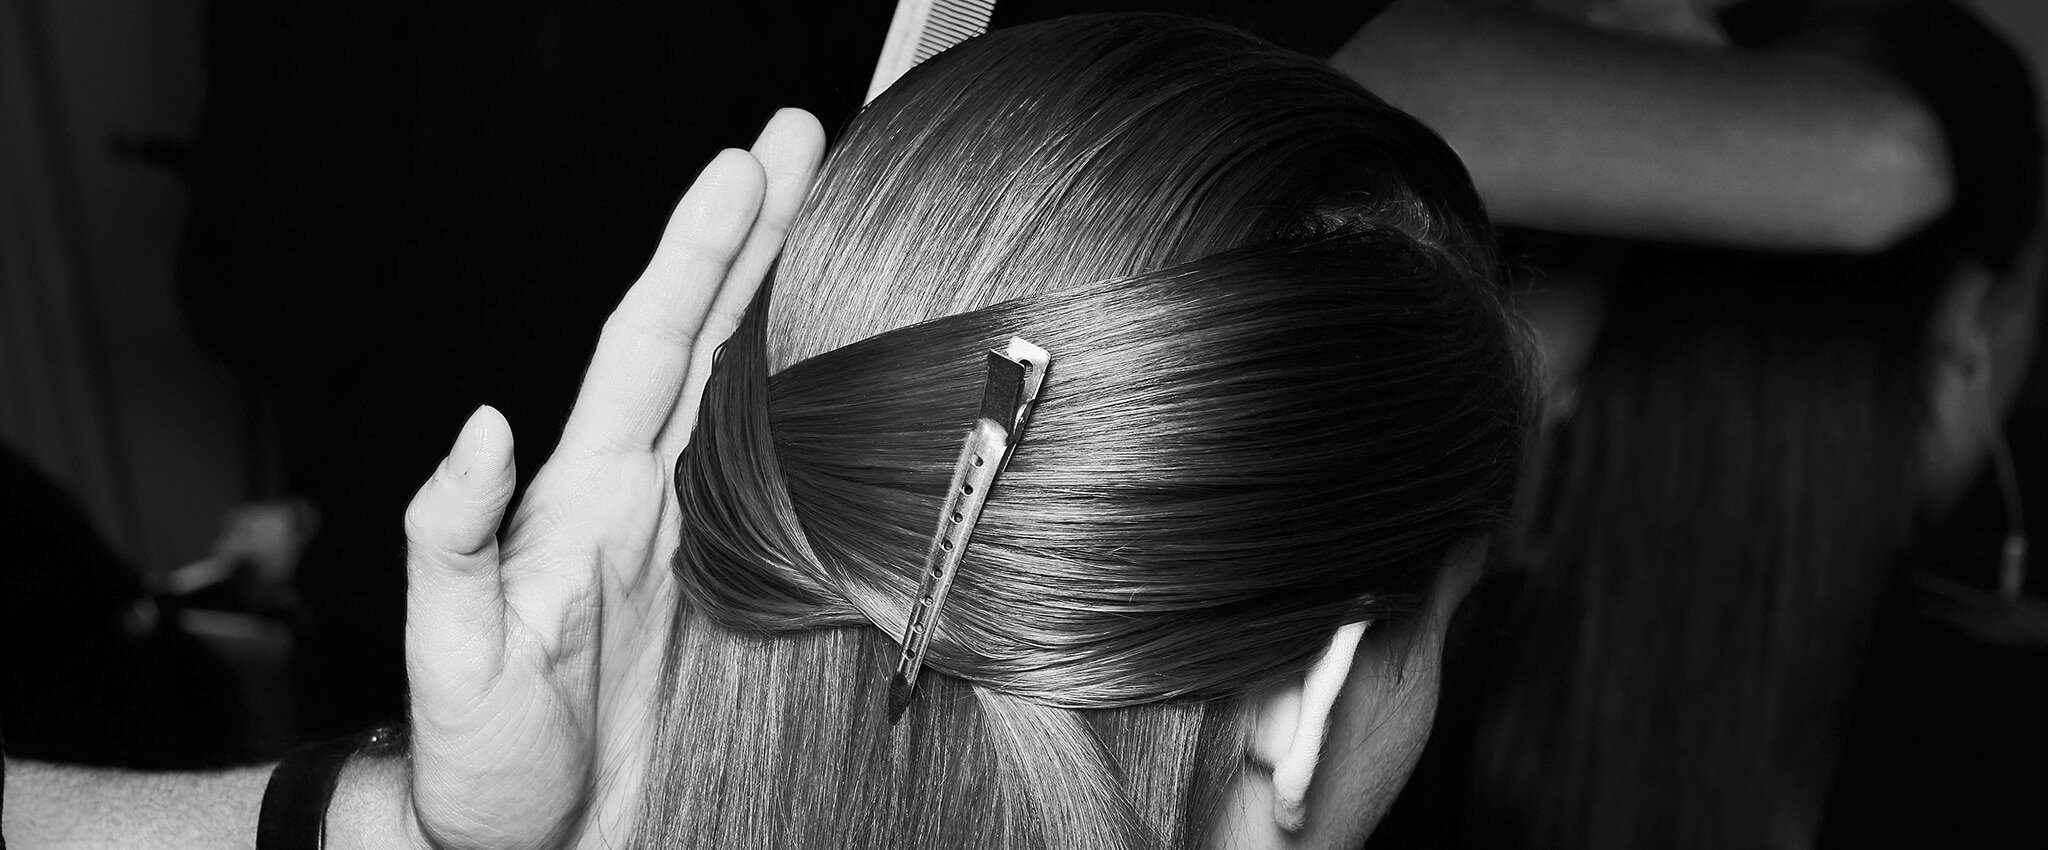 Fotografia a preto e branco de grande plano da parte de trás da cabeça de uma modelo, com os lados do cabelo apanhados atrás numa mola, com as mãos de um cabeleireiro e um pente visíveis